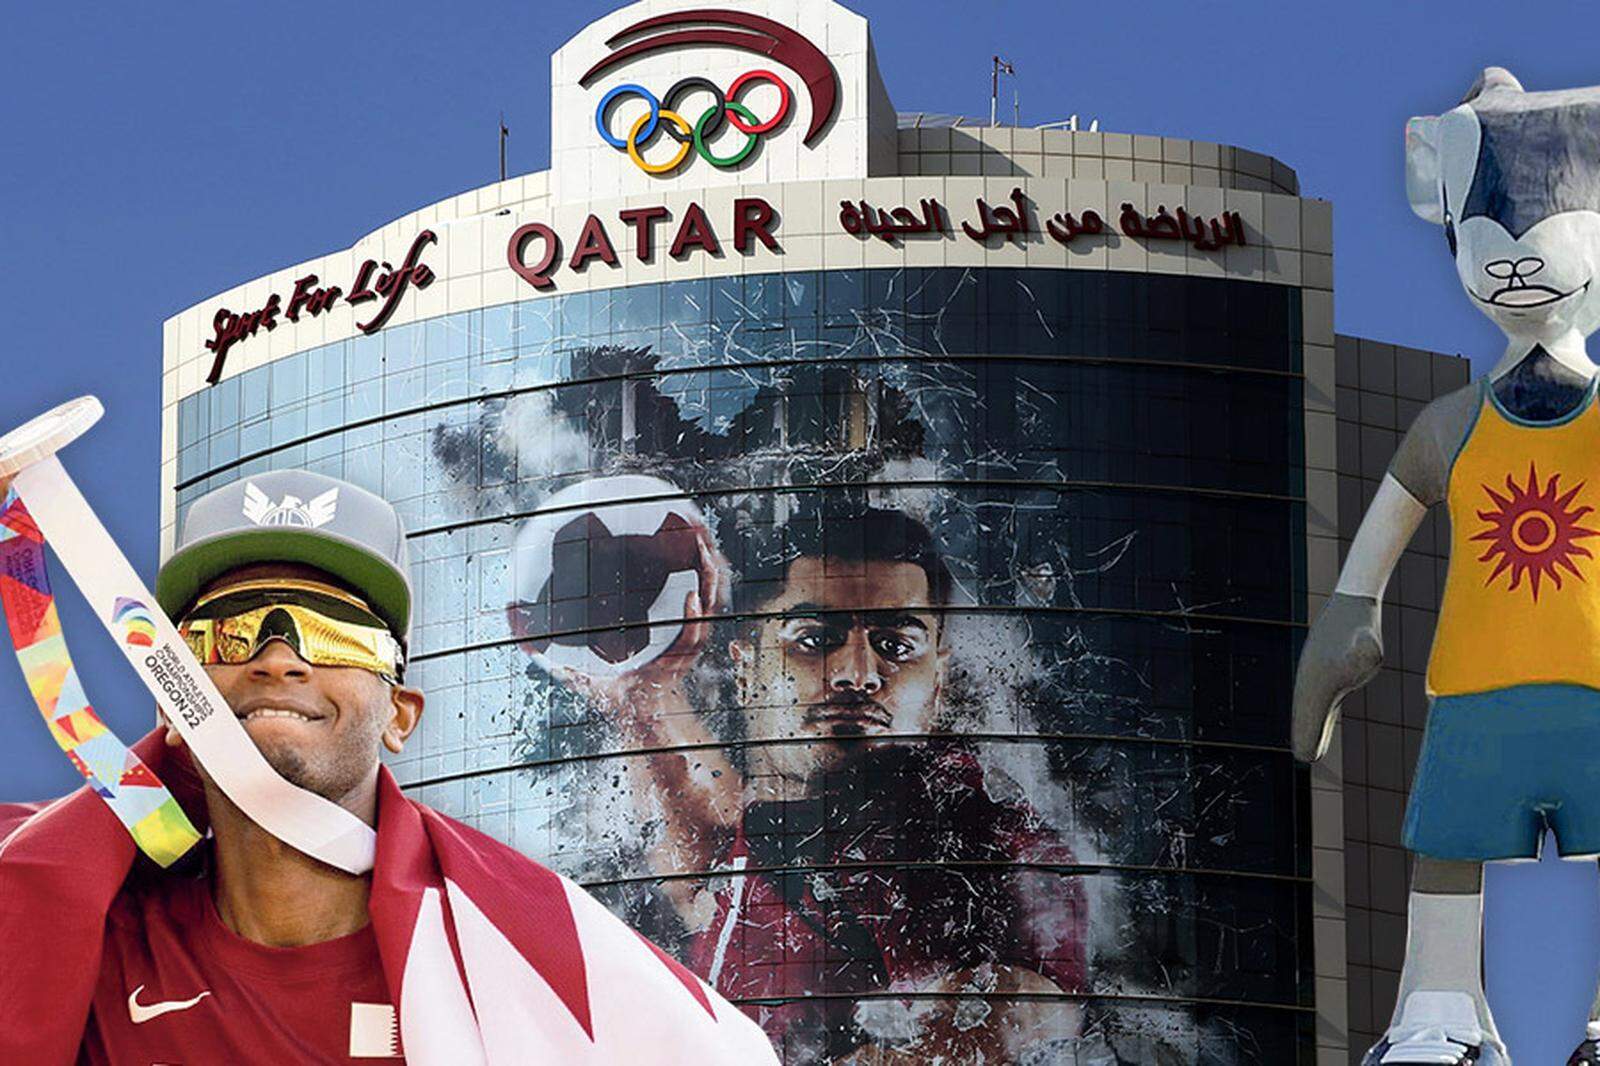 Hochspringer Mutaz Essa Barshim sorgte in Tokio 2020 für die Goldmedaille. Die olympische Symbolik ziert in Doha bereits Gebäude. Und ein Maskottchen stünde parat